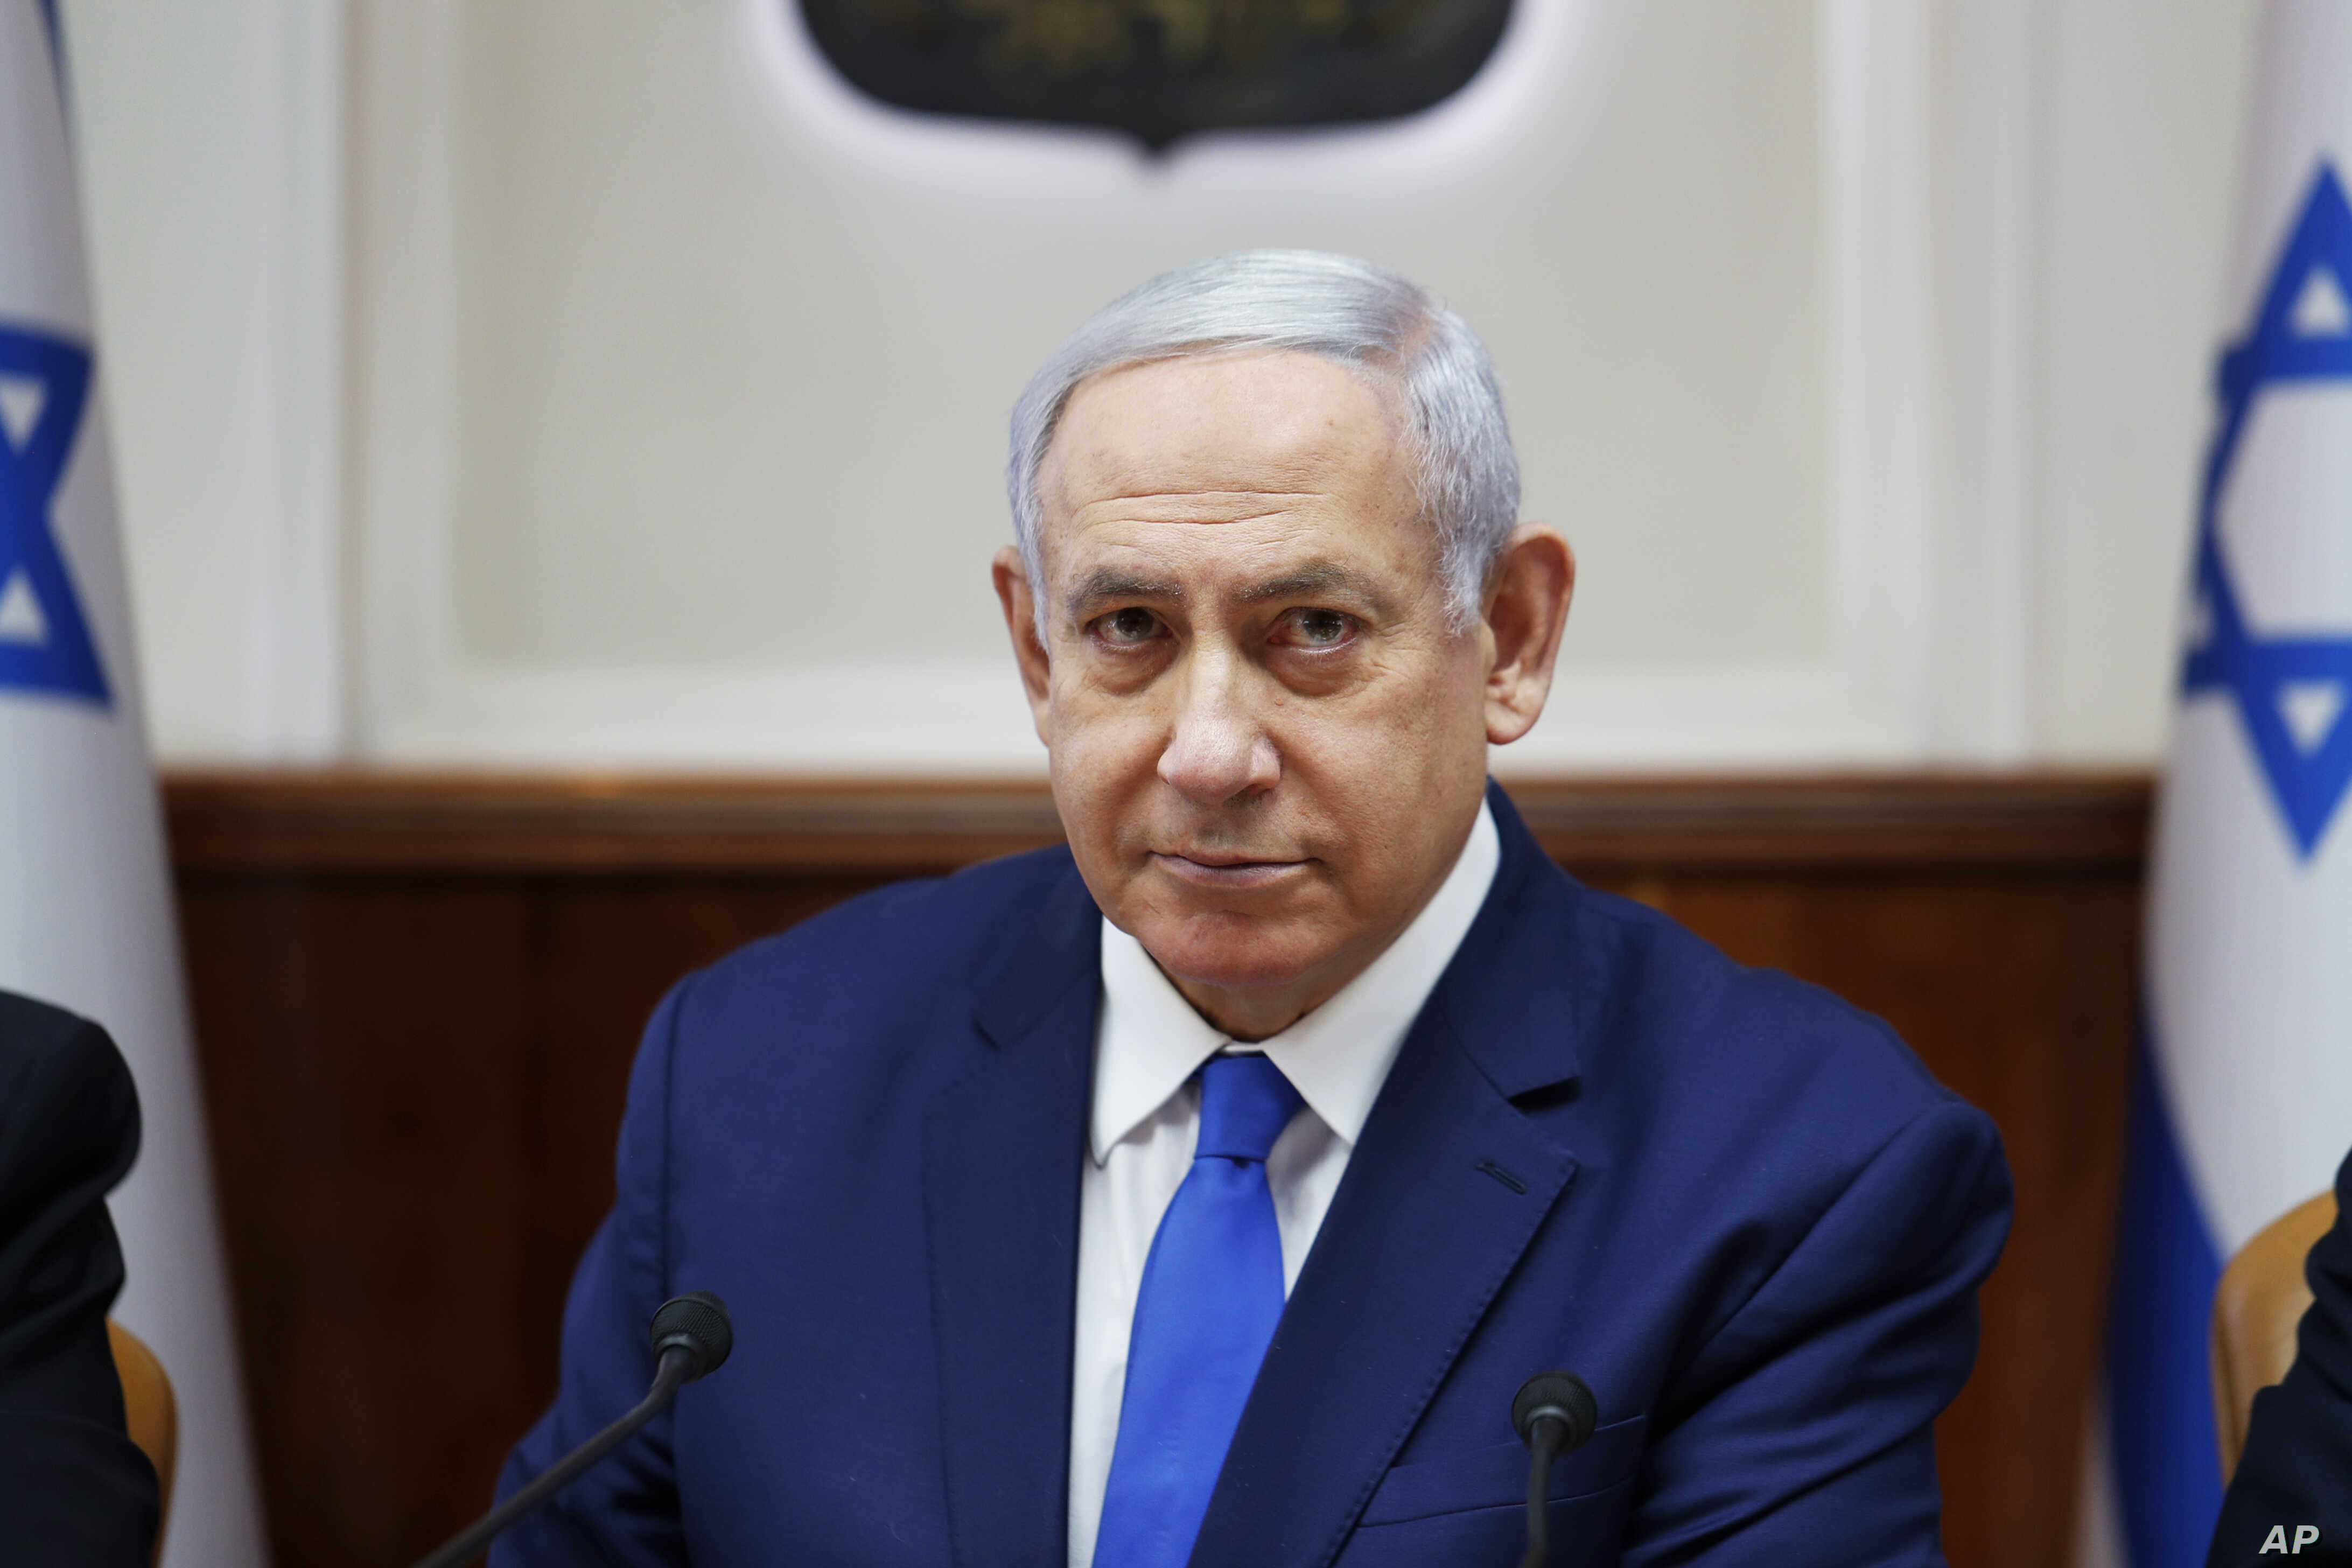 Netanyahu says Iran behind explosion of Israel-owned vessel  